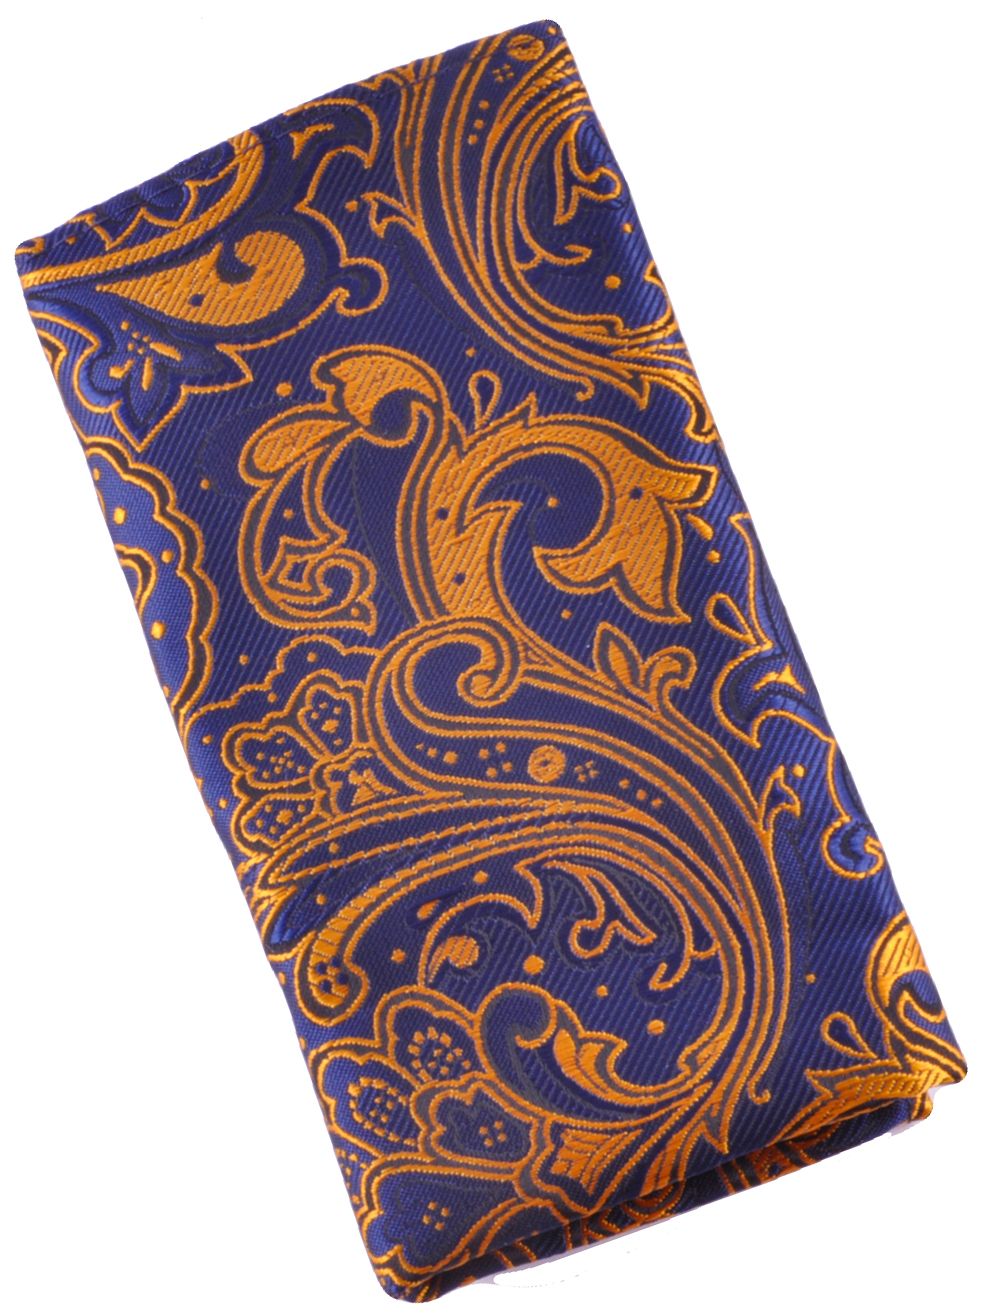 Нагрудный платок темно-синий пейсли описание: Материал - Микрофибра, Размеры - 24 см х 24 см, Страна производства - Турция;